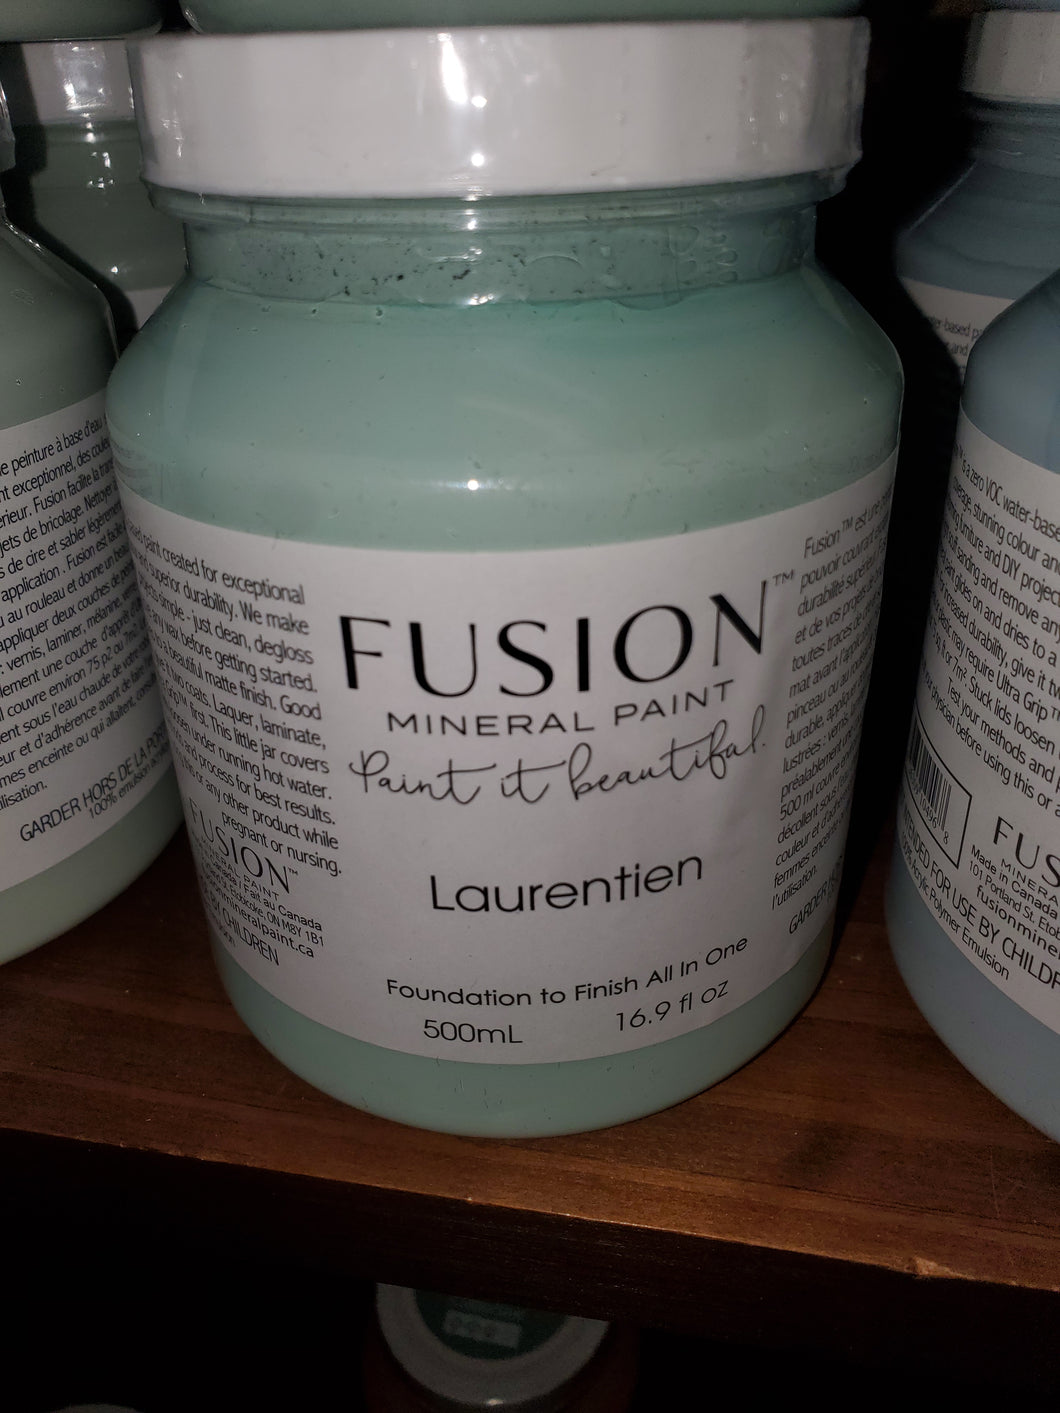 Fuison Mineral Paint in Laurentien